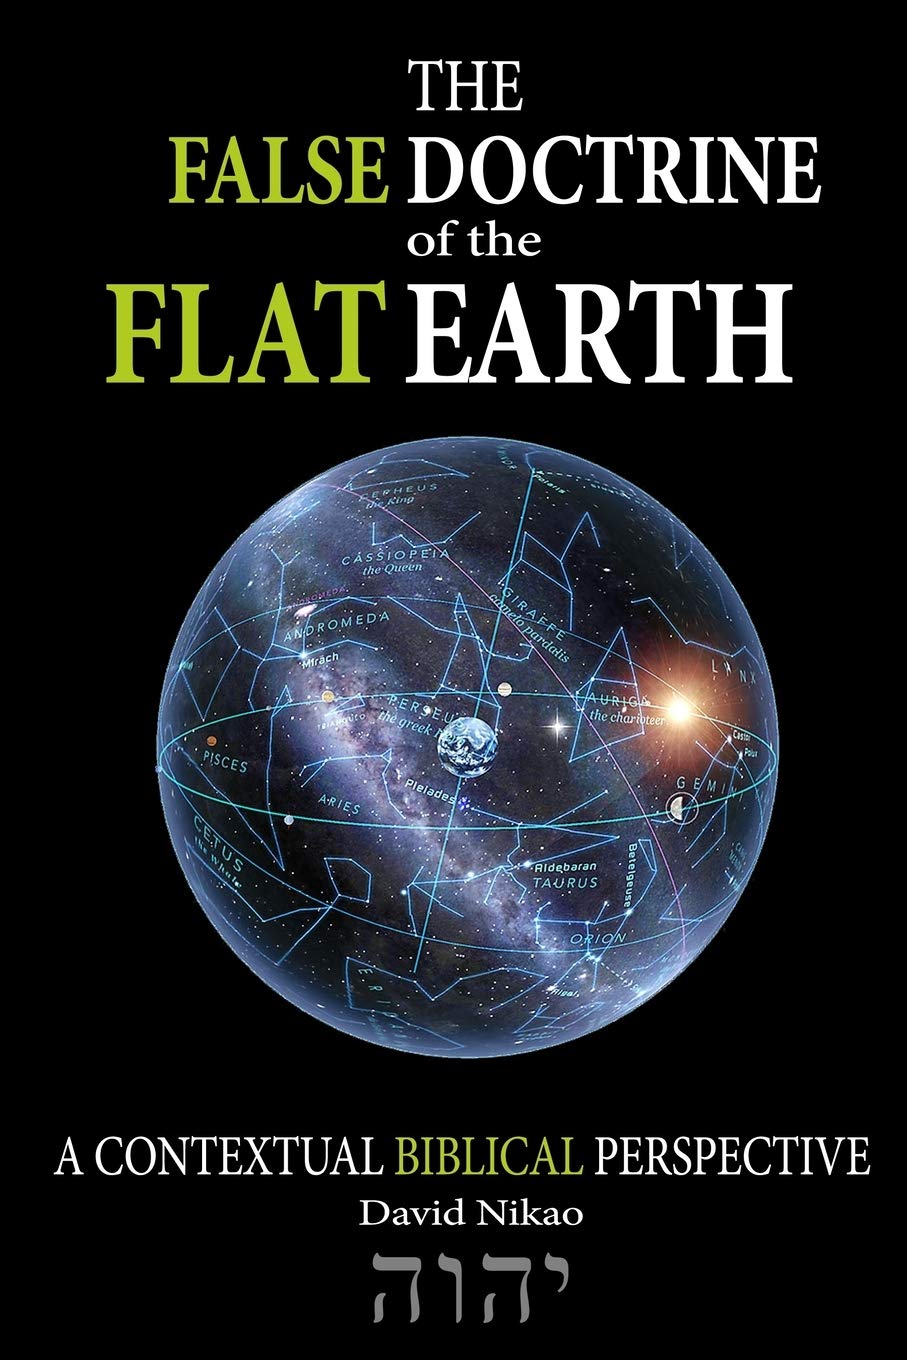 earth is flat type error